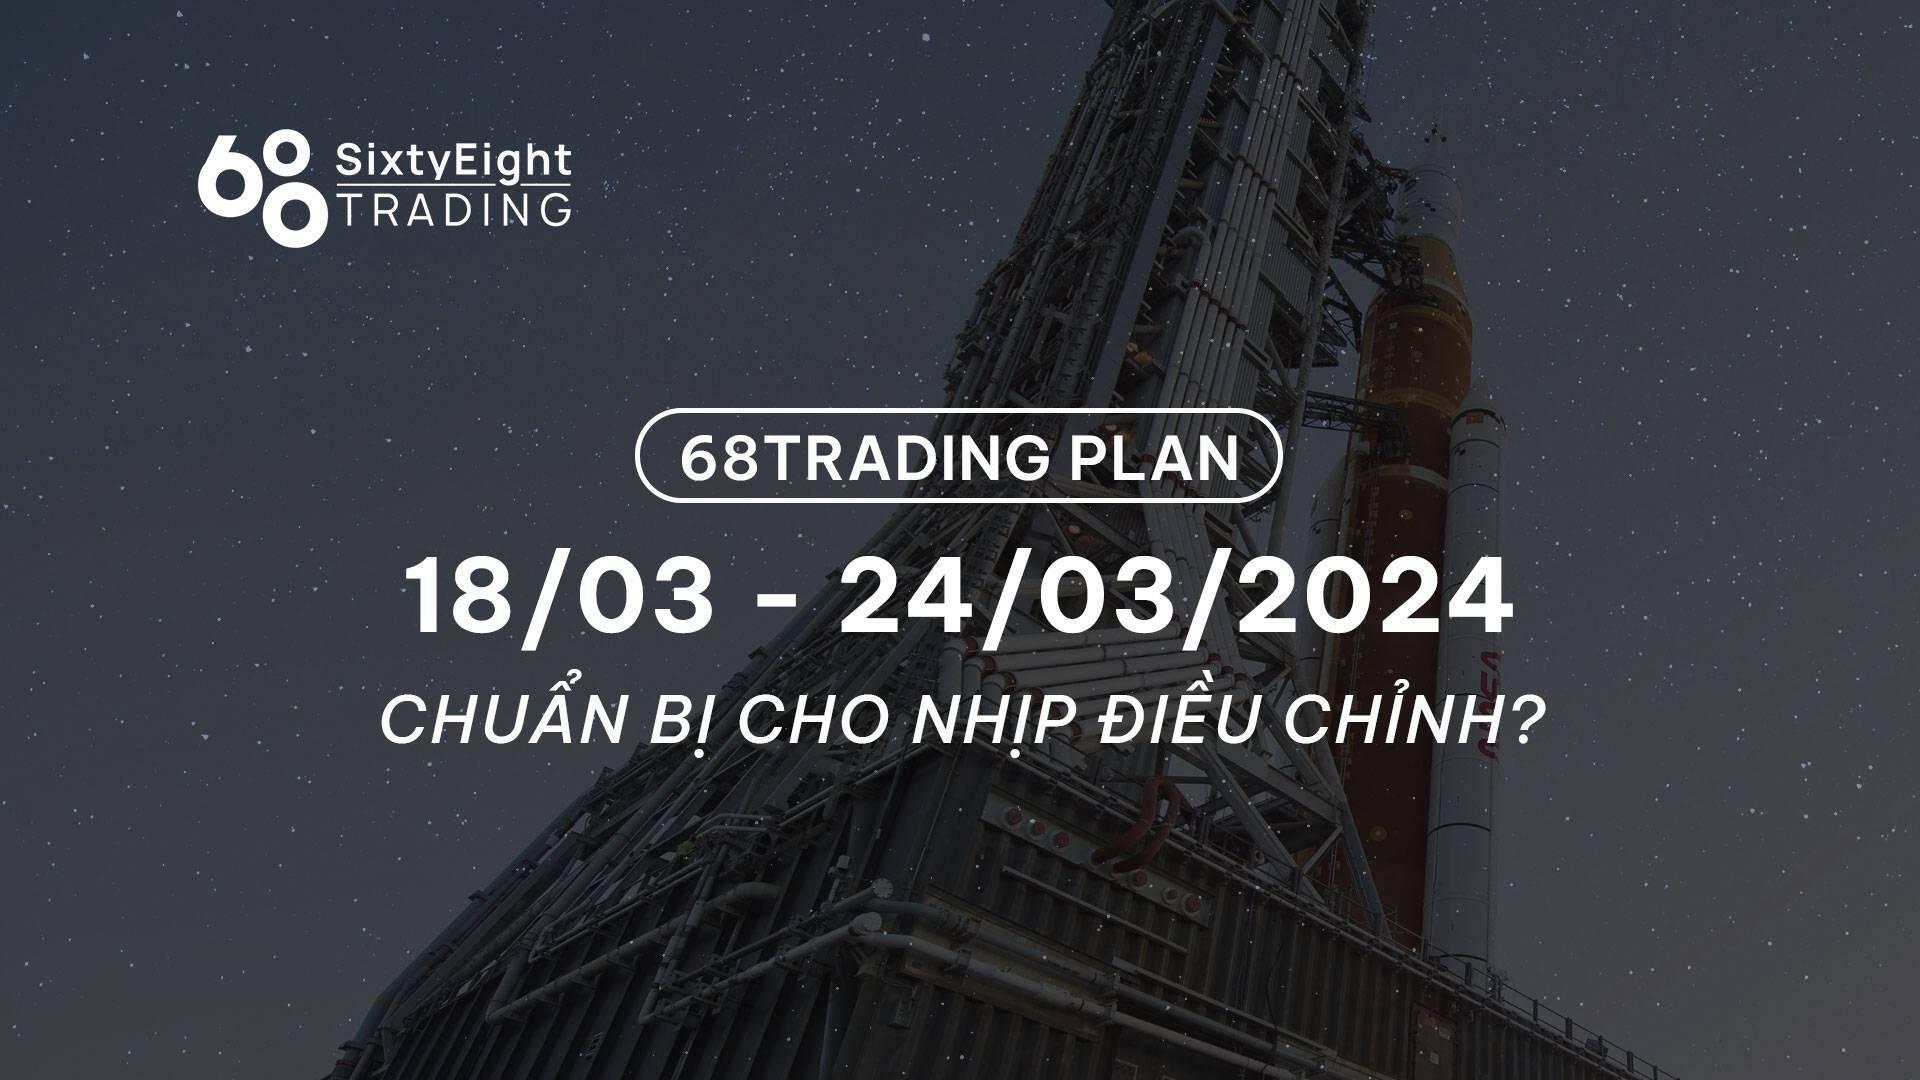 68-trading-plan-1803-24032024-chuan-bi-cho-nhip-dieu-chinh